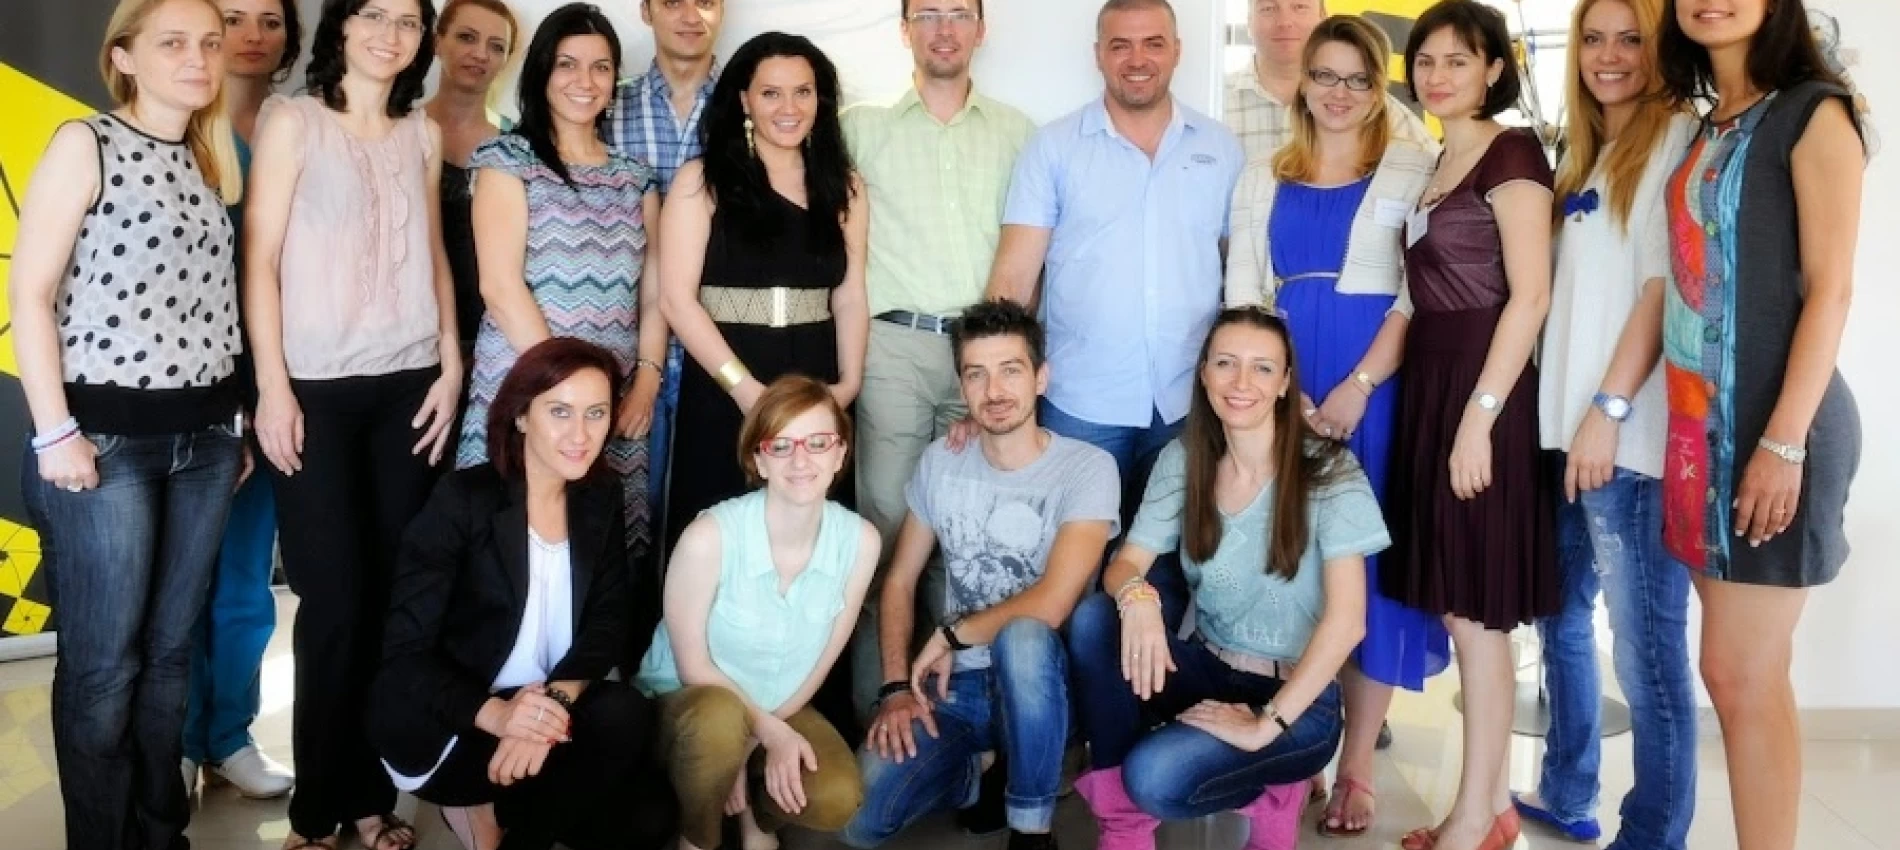 15-16 Iunie 2013, Perfectionarea Continua a echipei NeoClinique cu Dr. Dan Lazar